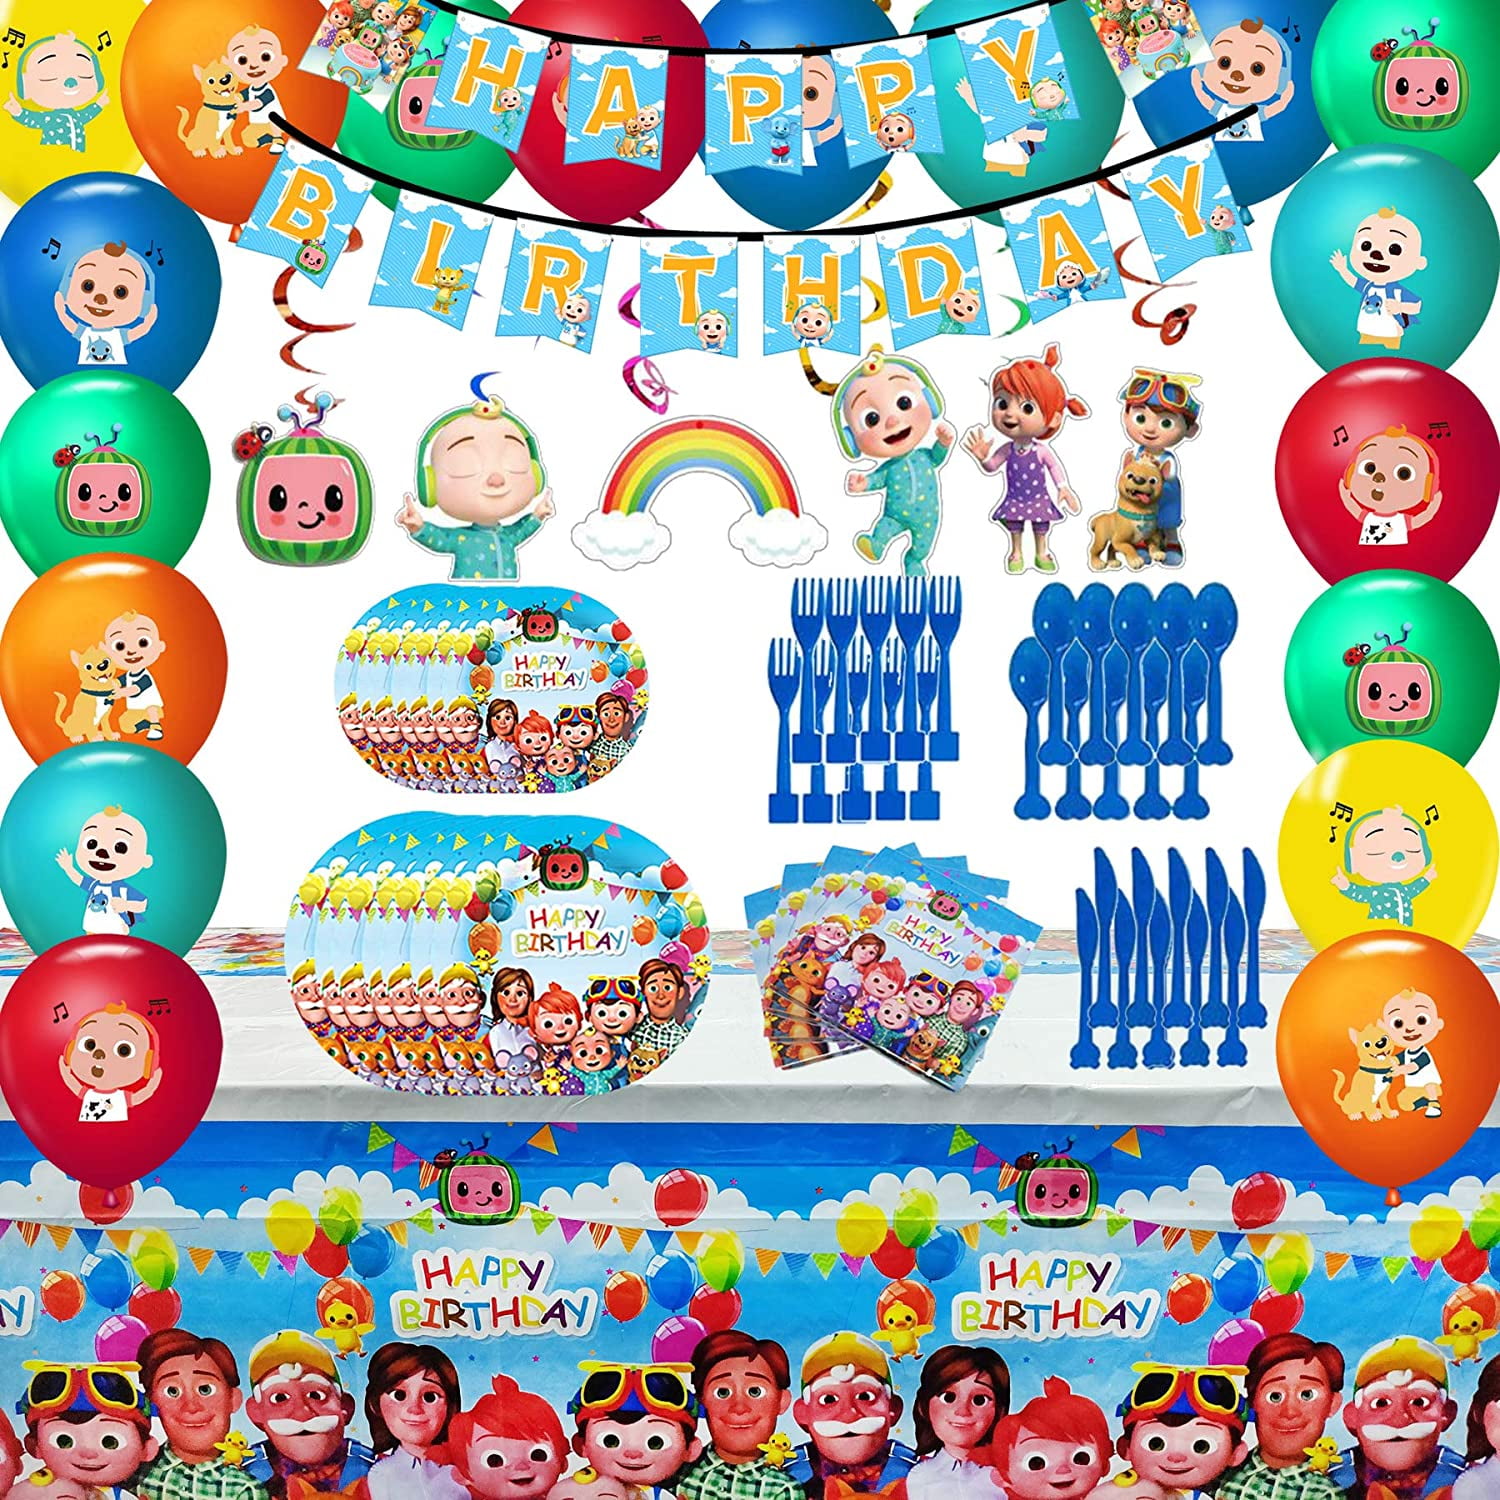 Samsung Cocomelon Party Supplies Cocomelon Party Decoration Boys Birthday Party Walmart Com Walmart Com